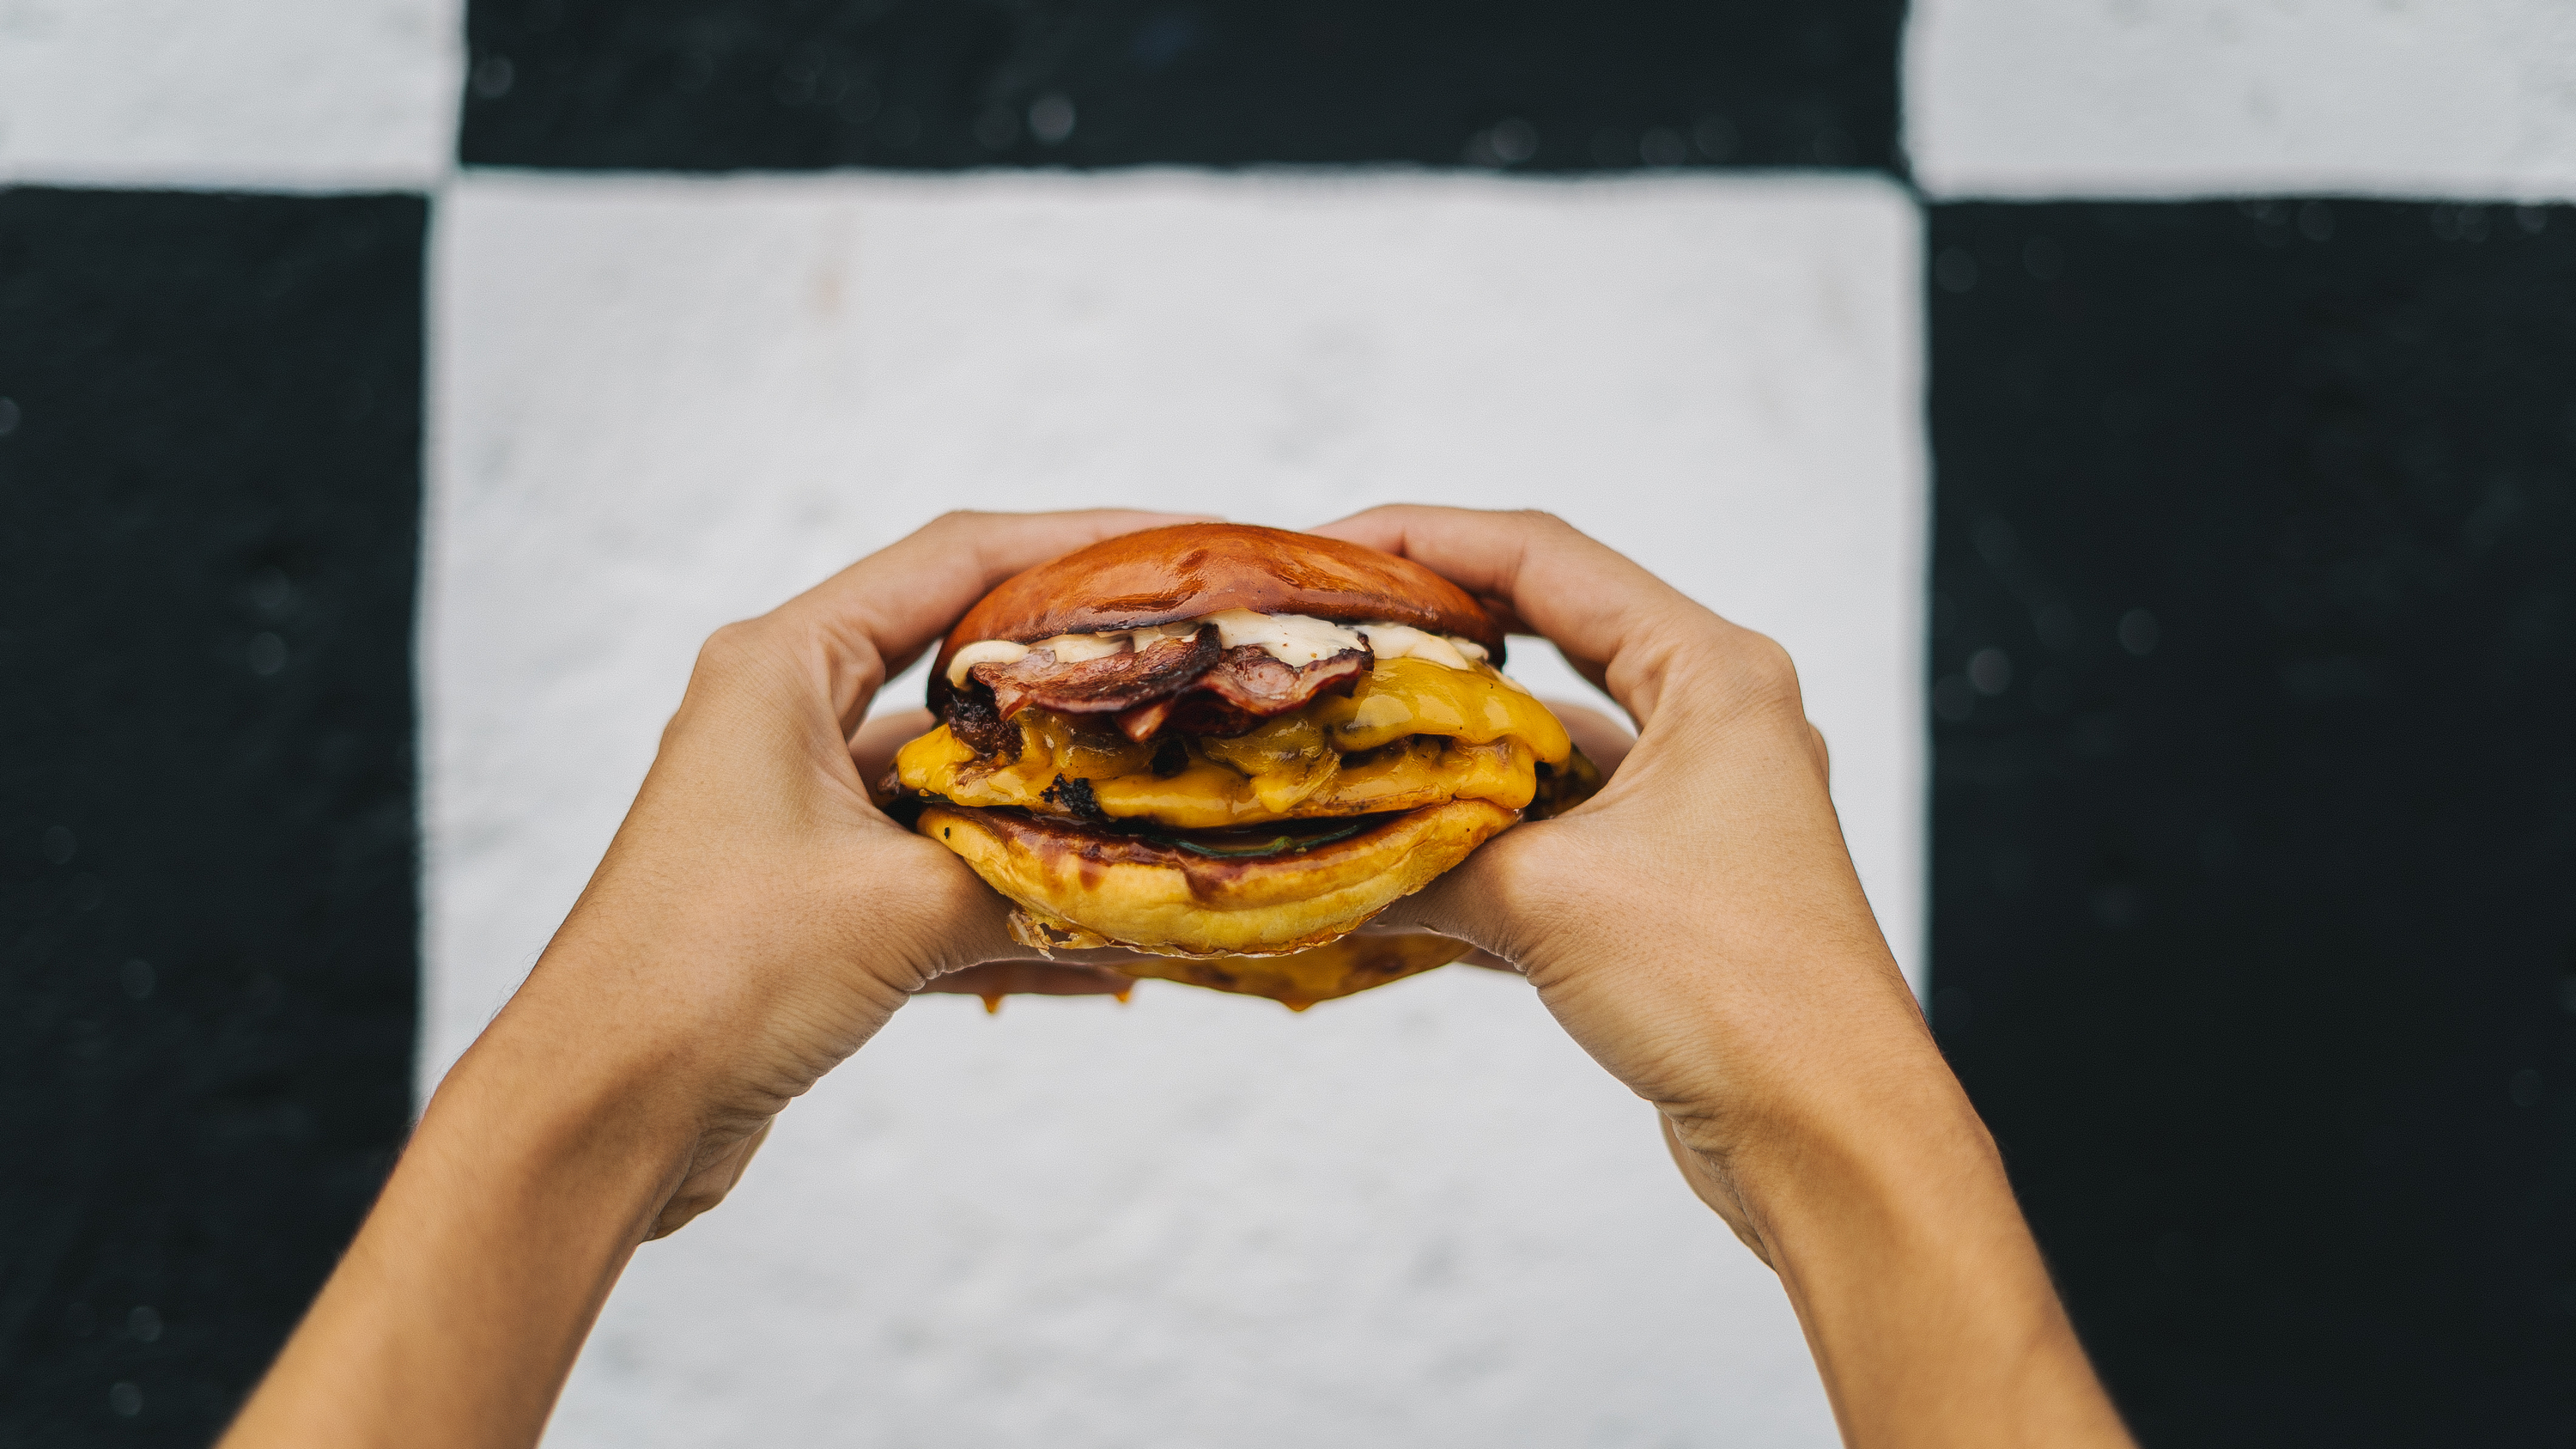 10 hamburguerias artesanais para conhecer em Lisboa